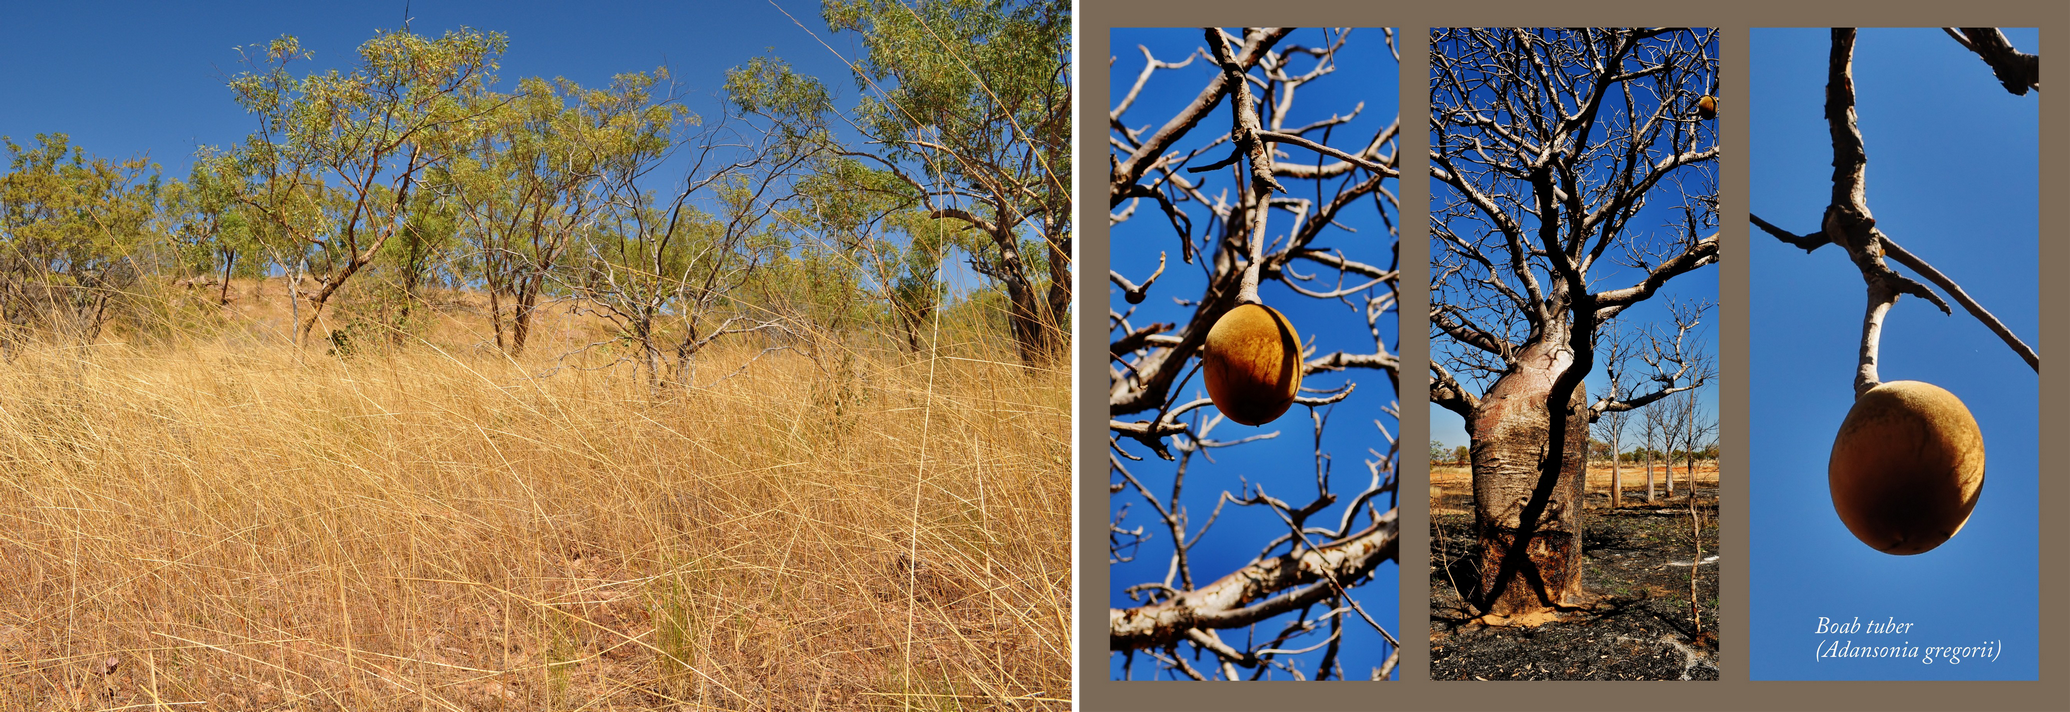 Savană cu eucalipt și baobab cu fructe în anotimpul secetos